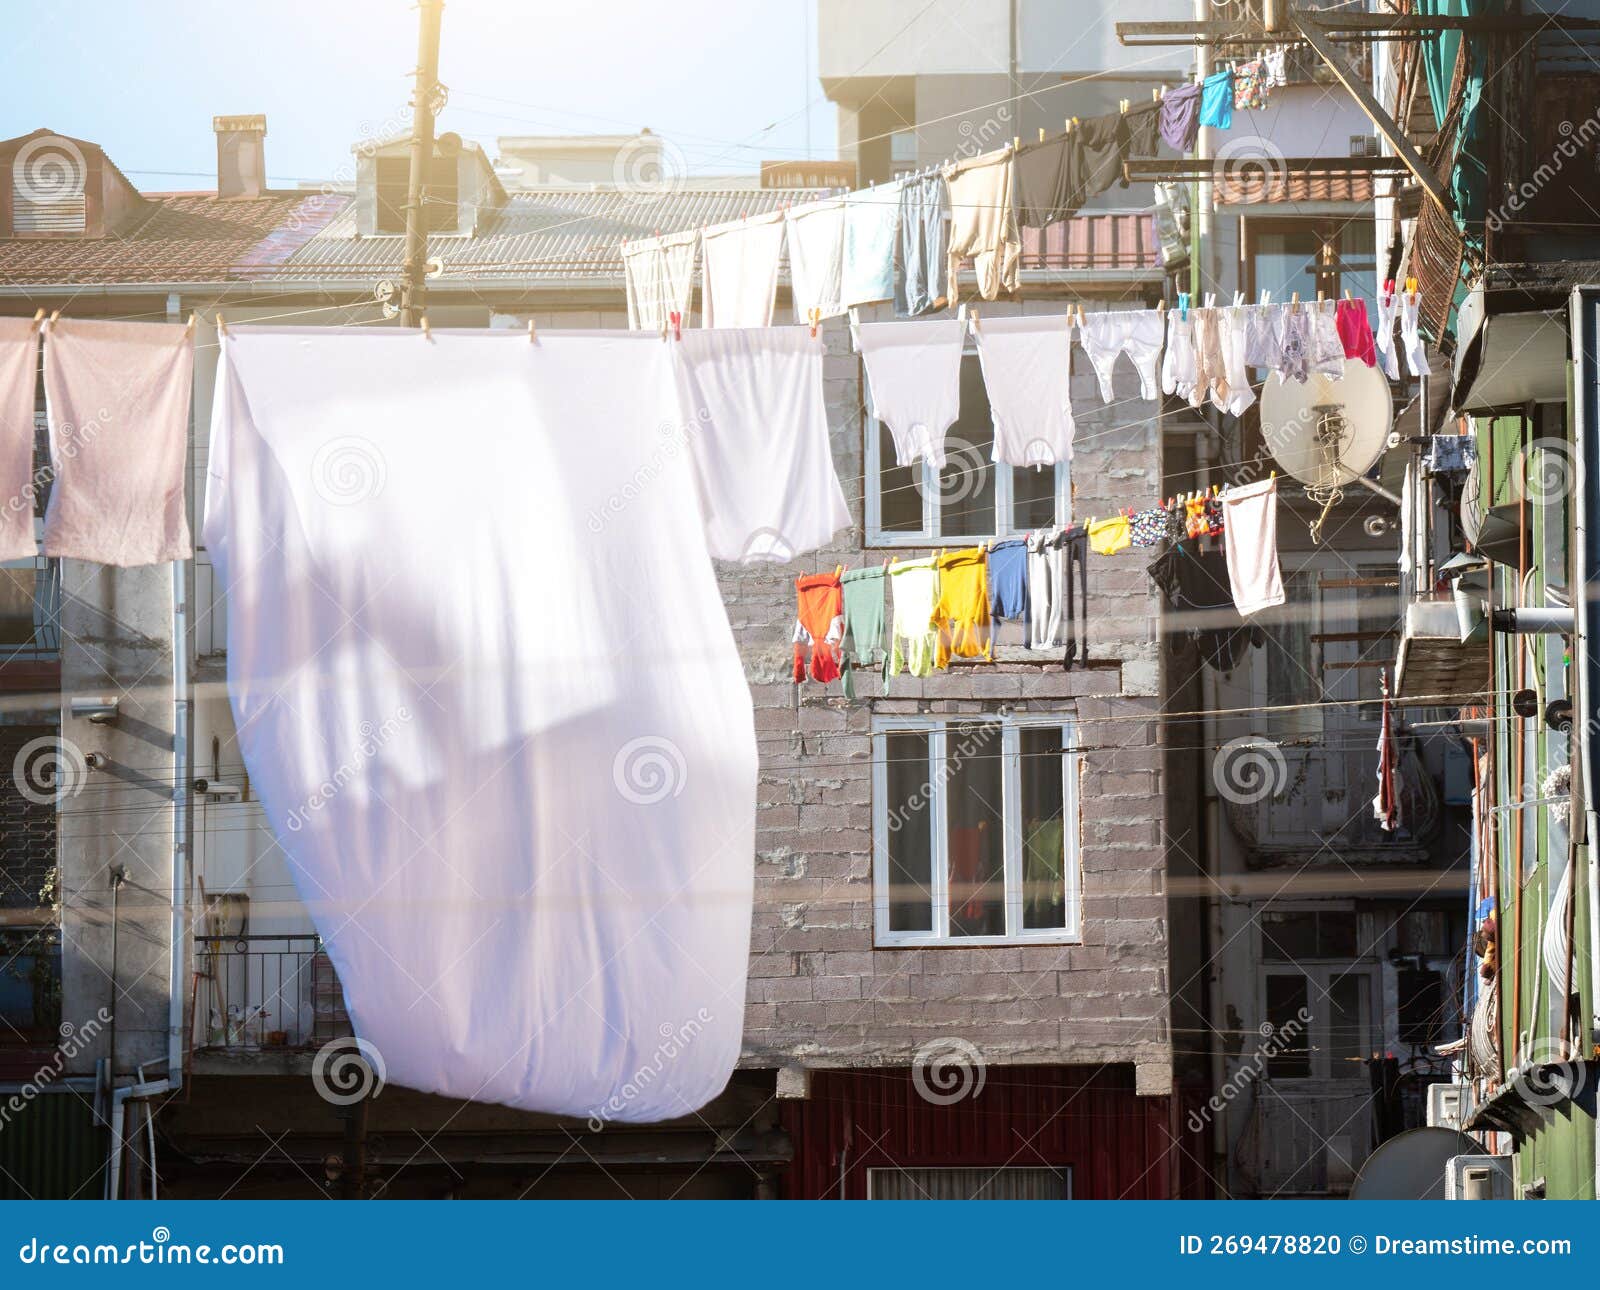 https://thumbs.dreamstime.com/z/ropa-colgada-para-secar-en-al-aire-libre-dentro-de-patio-casas-lavander%C3%ADa-lavada-secado-georgia-269478820.jpg